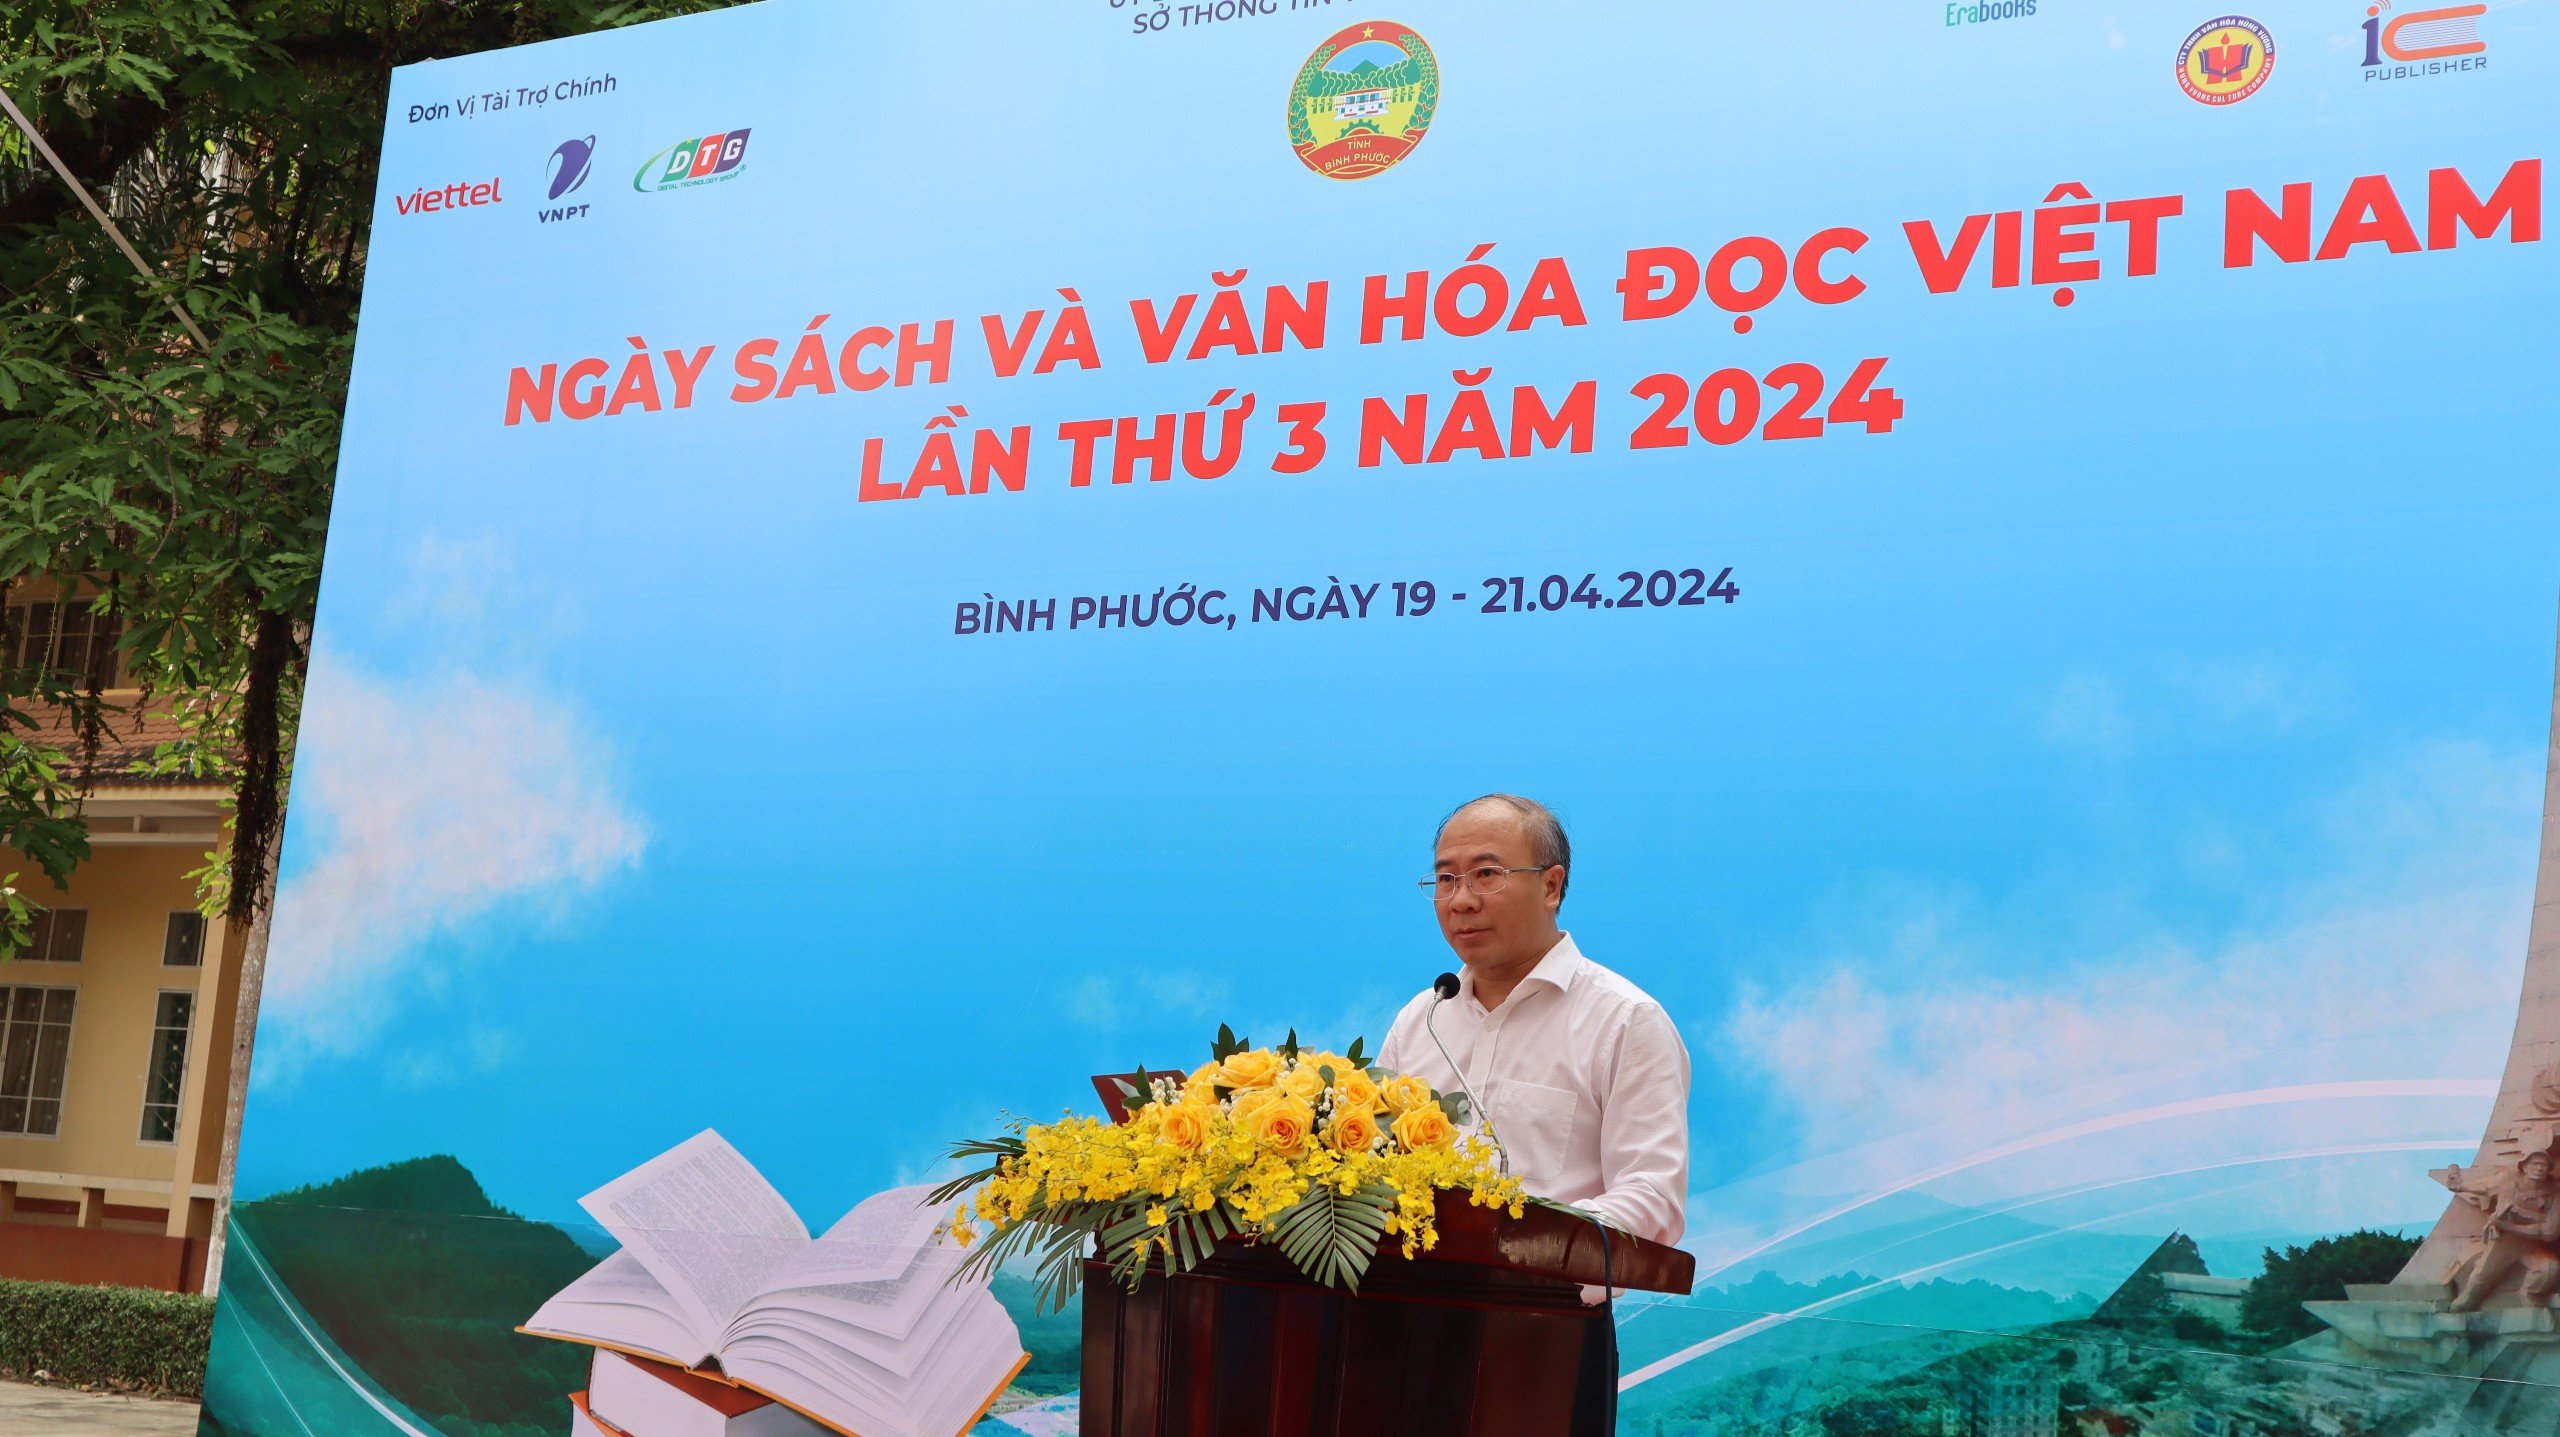 Ngày sách và Văn hóa đọc Việt Nam năm 2024 trên địa bàn tỉnh Bình Phước